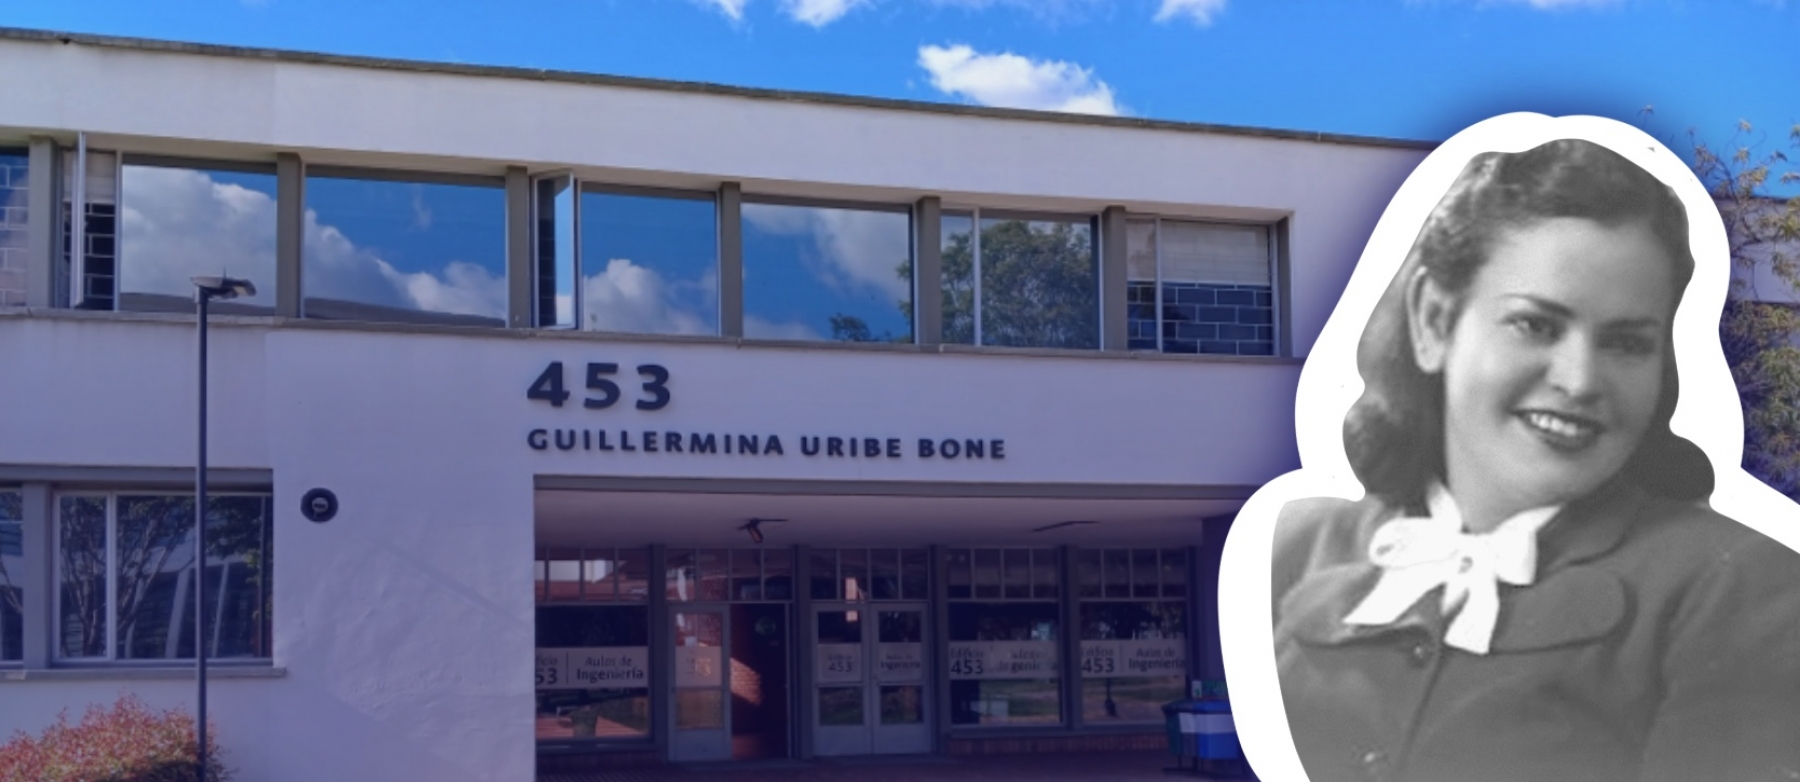 El nombre oficial del Edificio Aulas de Ingeniería es ahora Guillermina Uribe Bone, en honor a la primera mujer ingeniera graduada en la Facultad de Ingeniería.